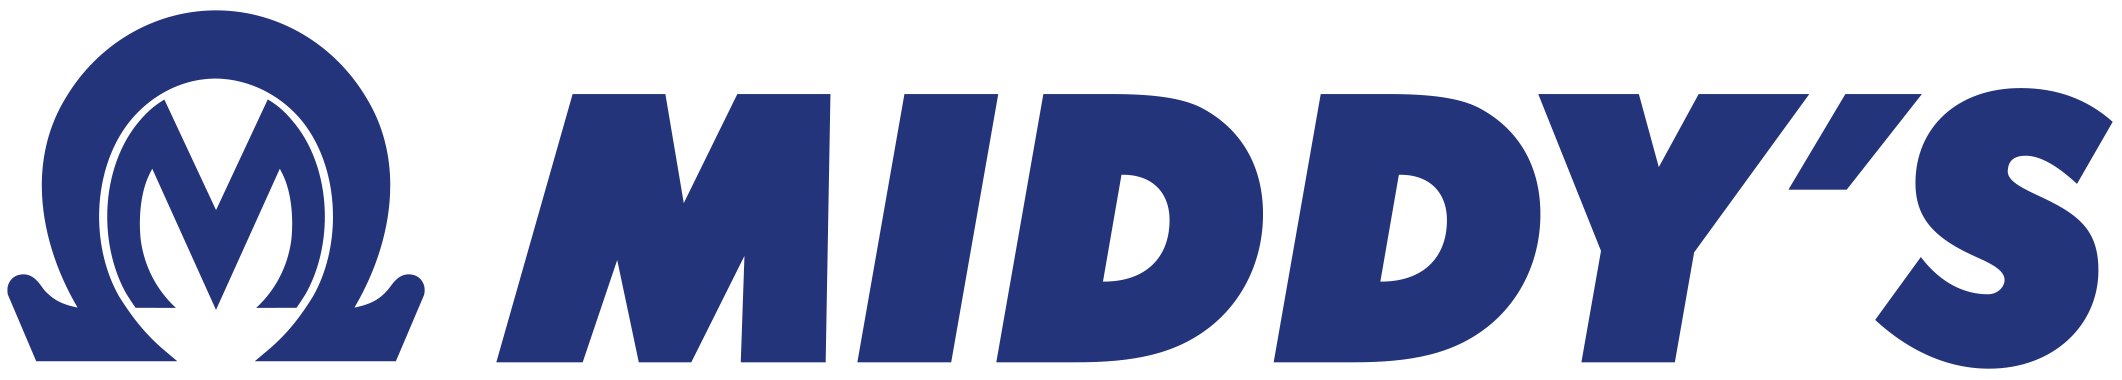 www.middys.com.auimagesmiddys-logo-blue